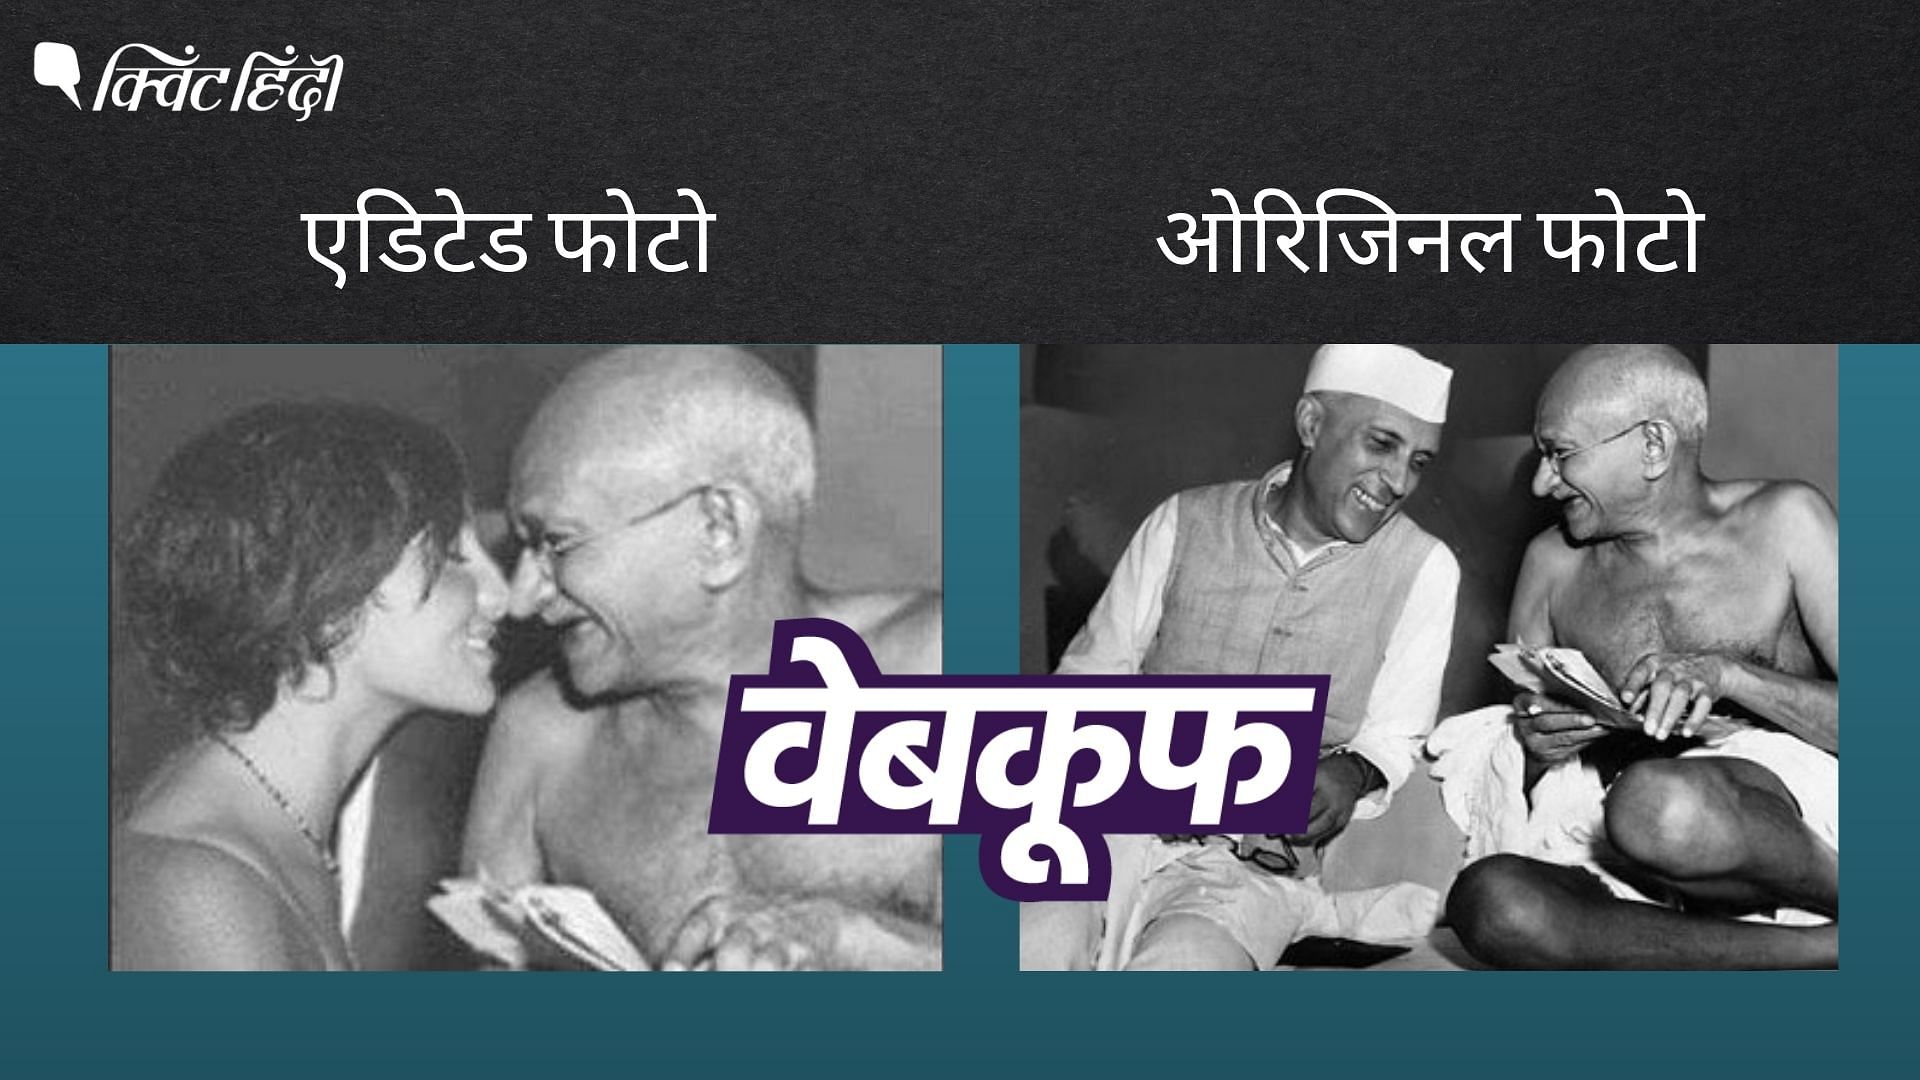 <div class="paragraphs"><p>ओरिजिनल फोटो में महात्मा गांधी को जवाहरलाल नेहरू से बातचीत करते हुए और हंसते हुए देखा जा सकता है.</p></div>